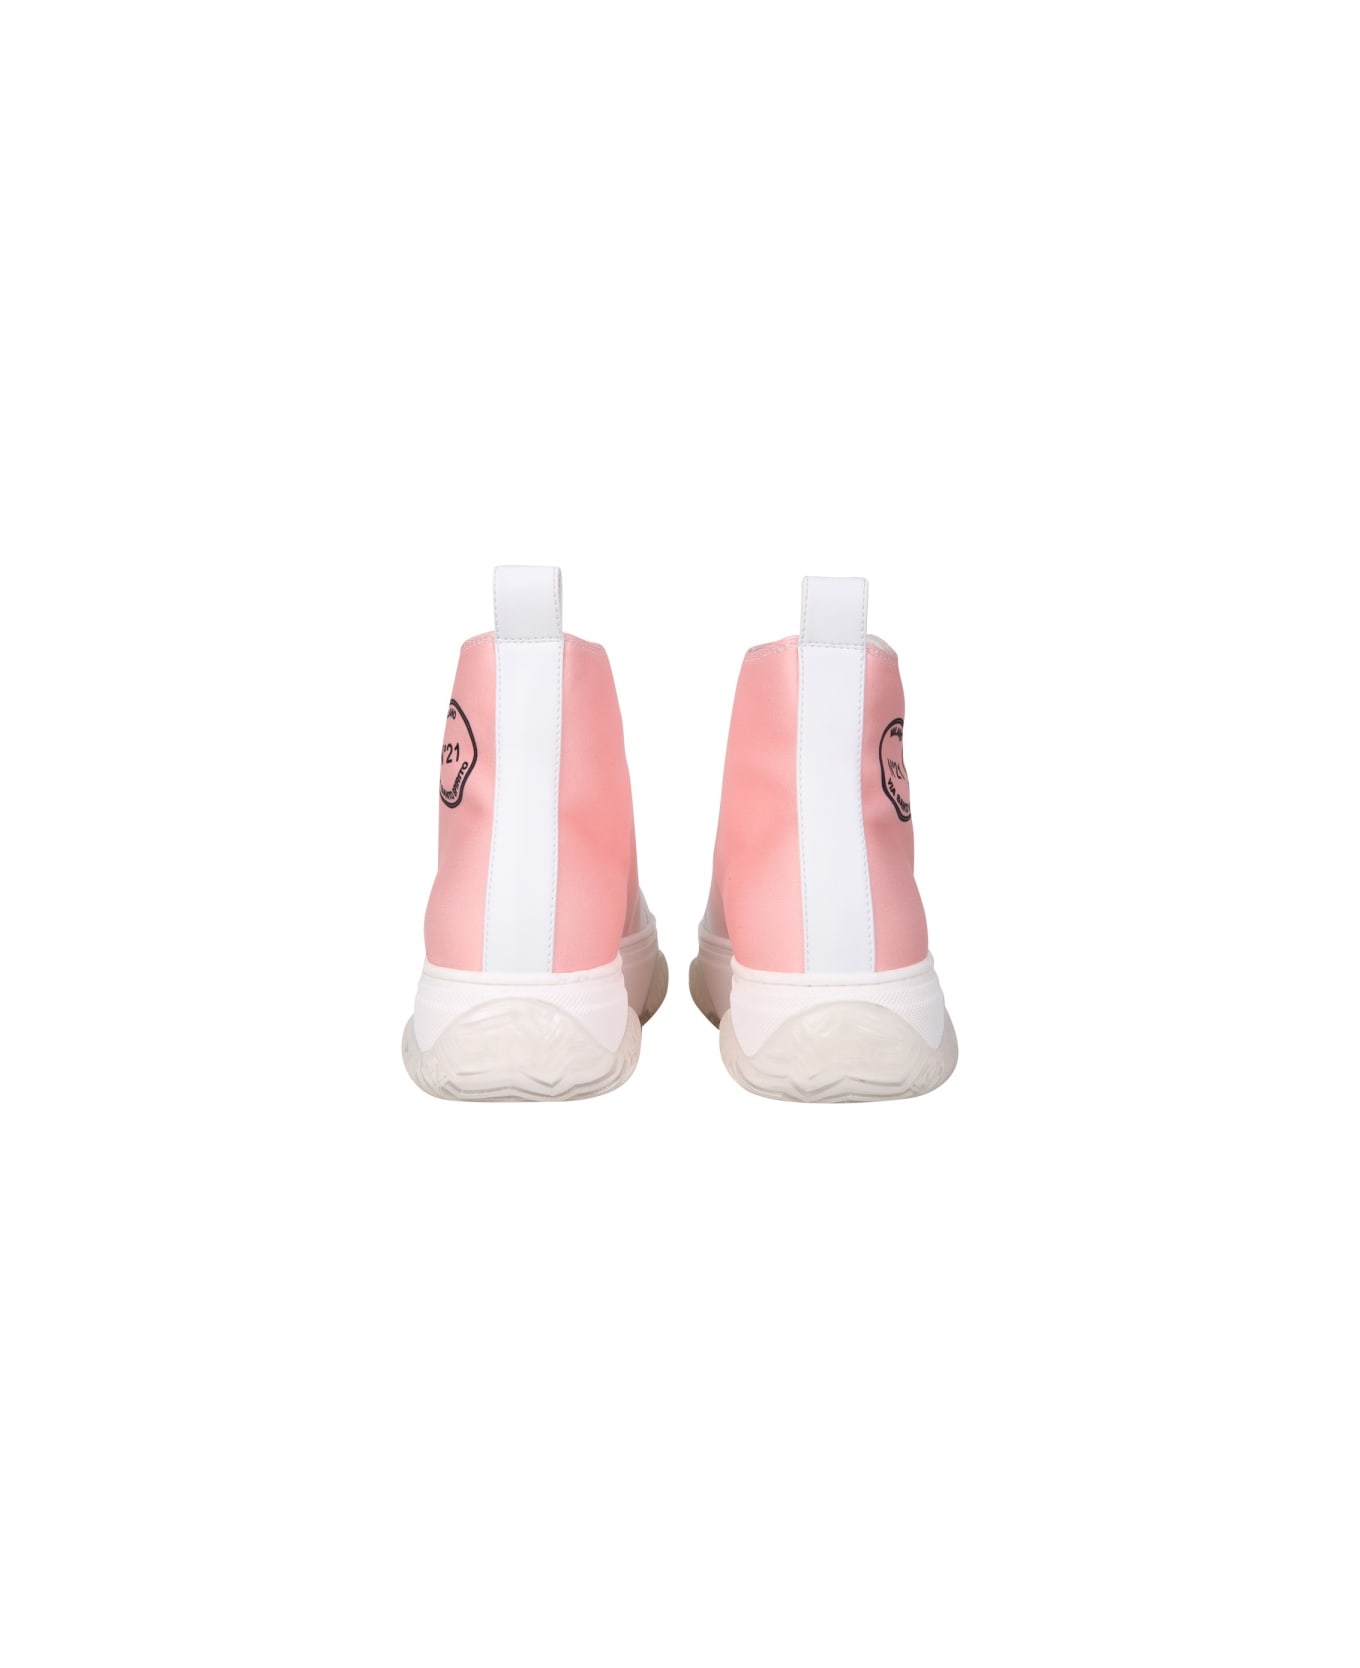 N.21 High Bonnie Sneakers - WHITE